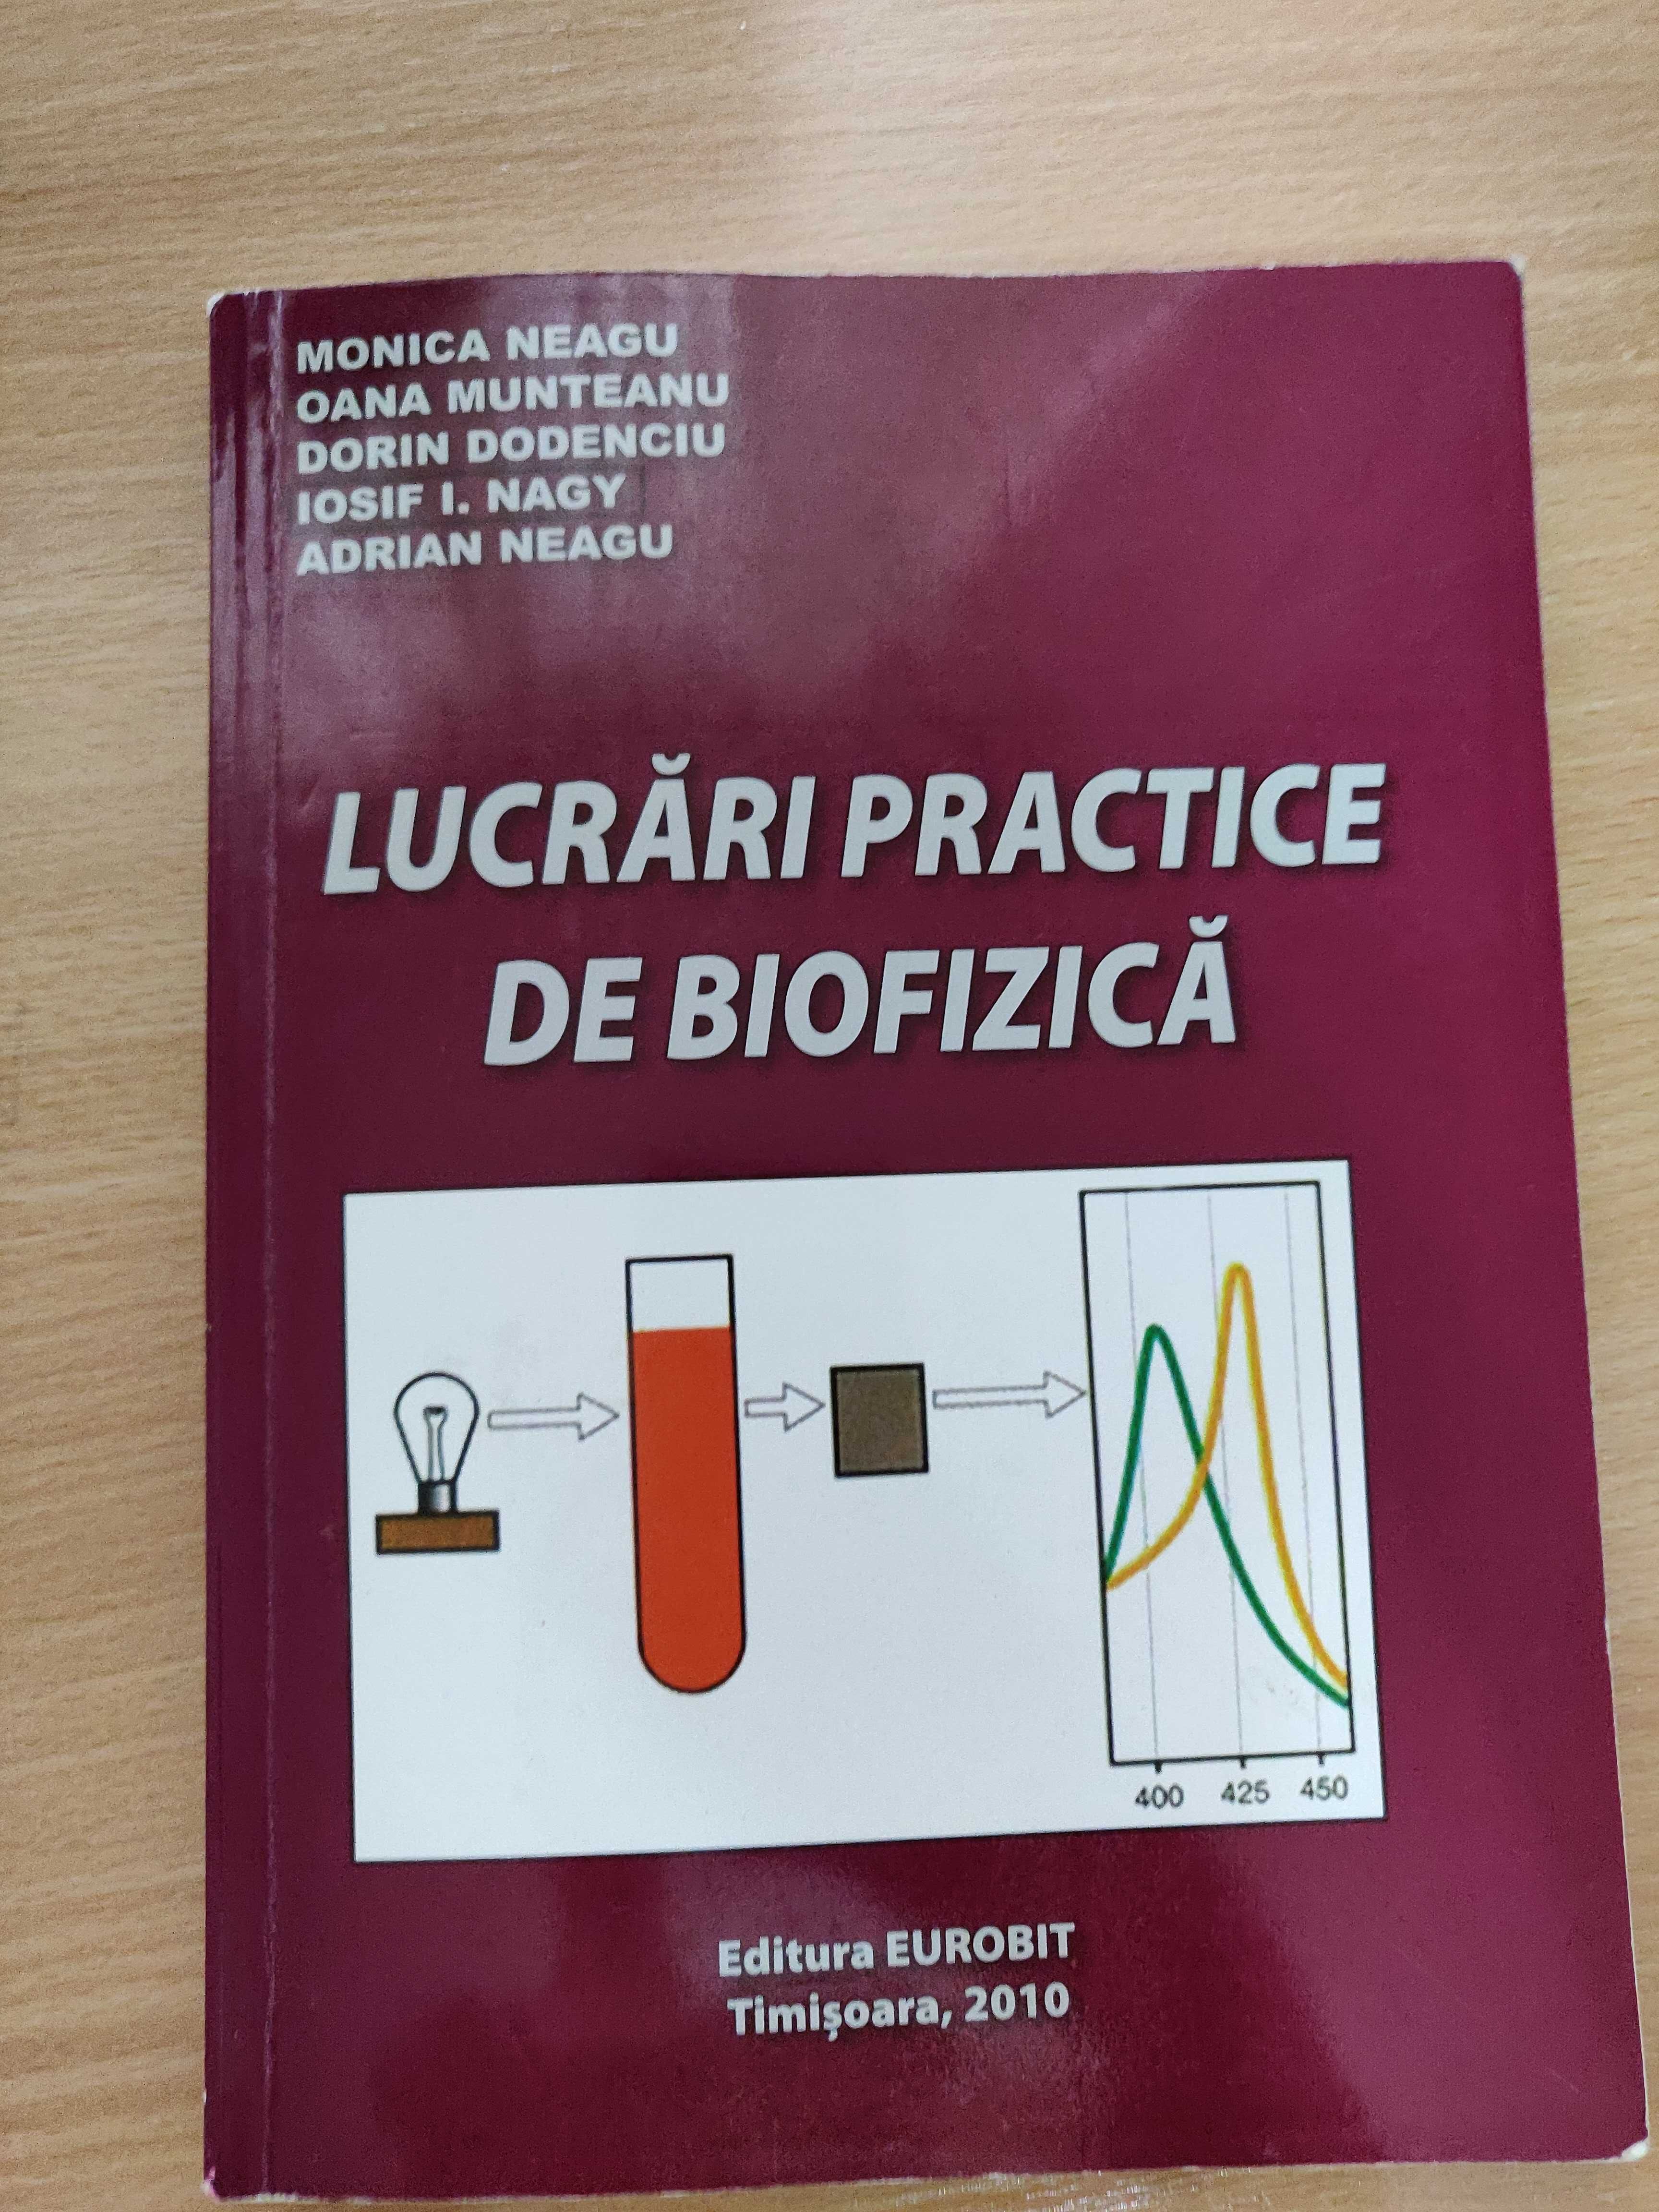 UMF Cărți medicina - anatomie, biofizica, biologie celulara